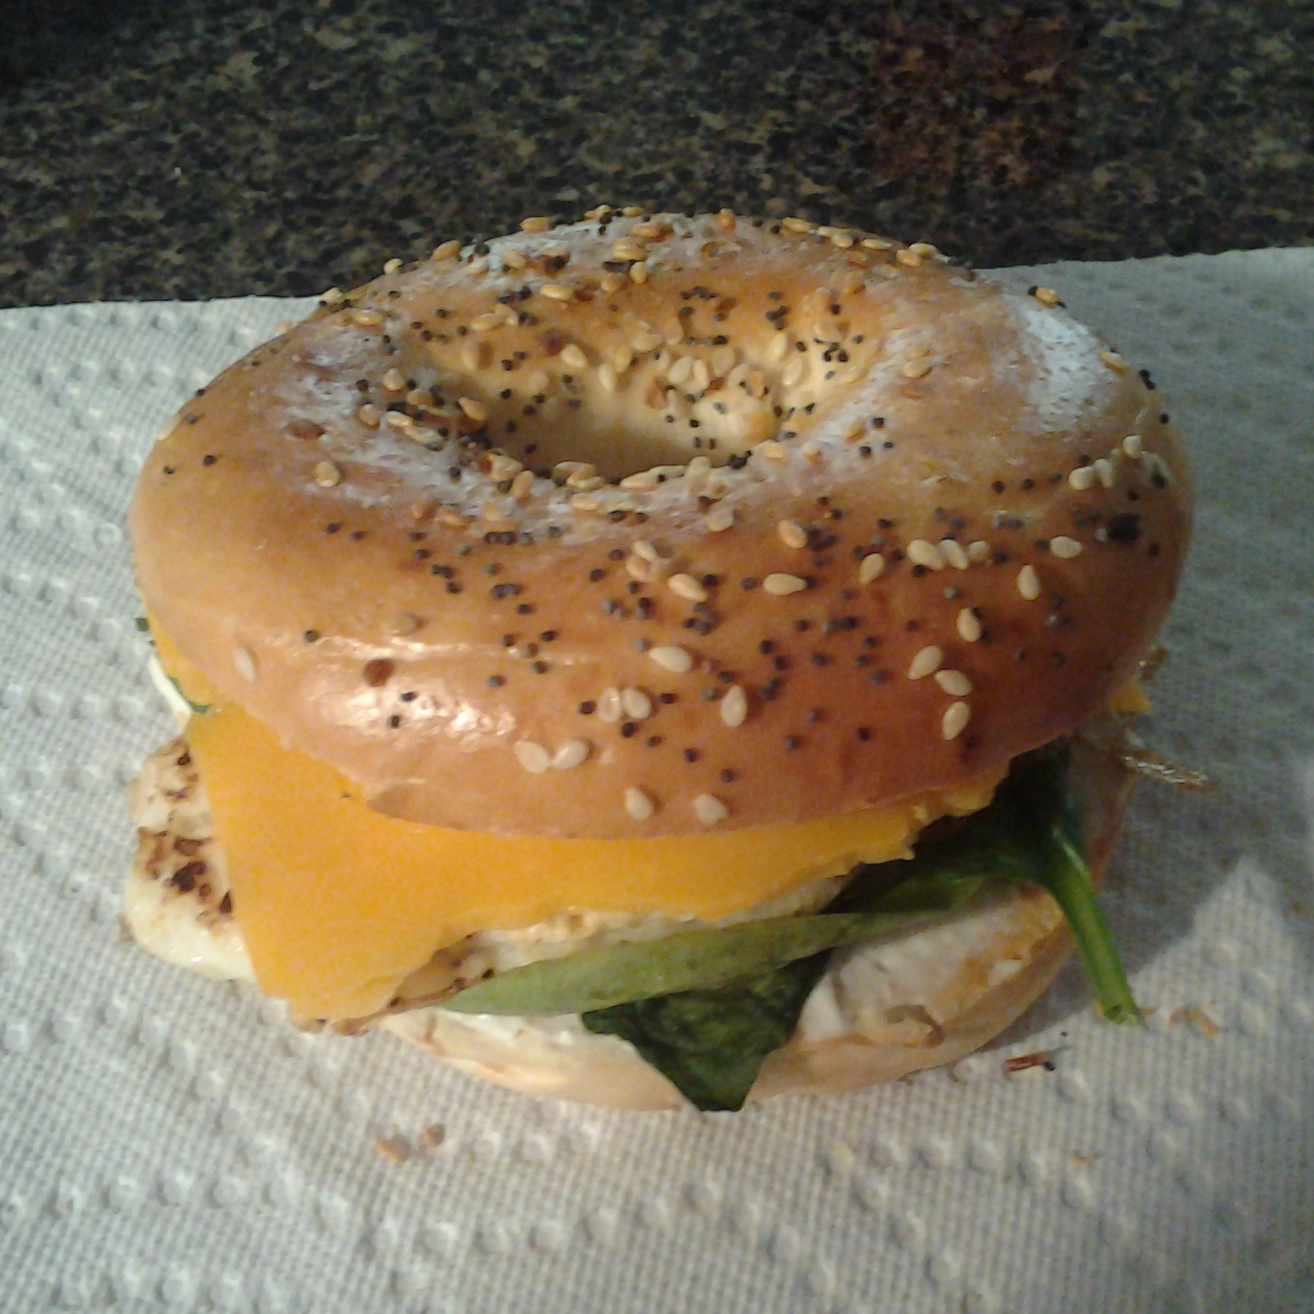 A finished bagel sandwich